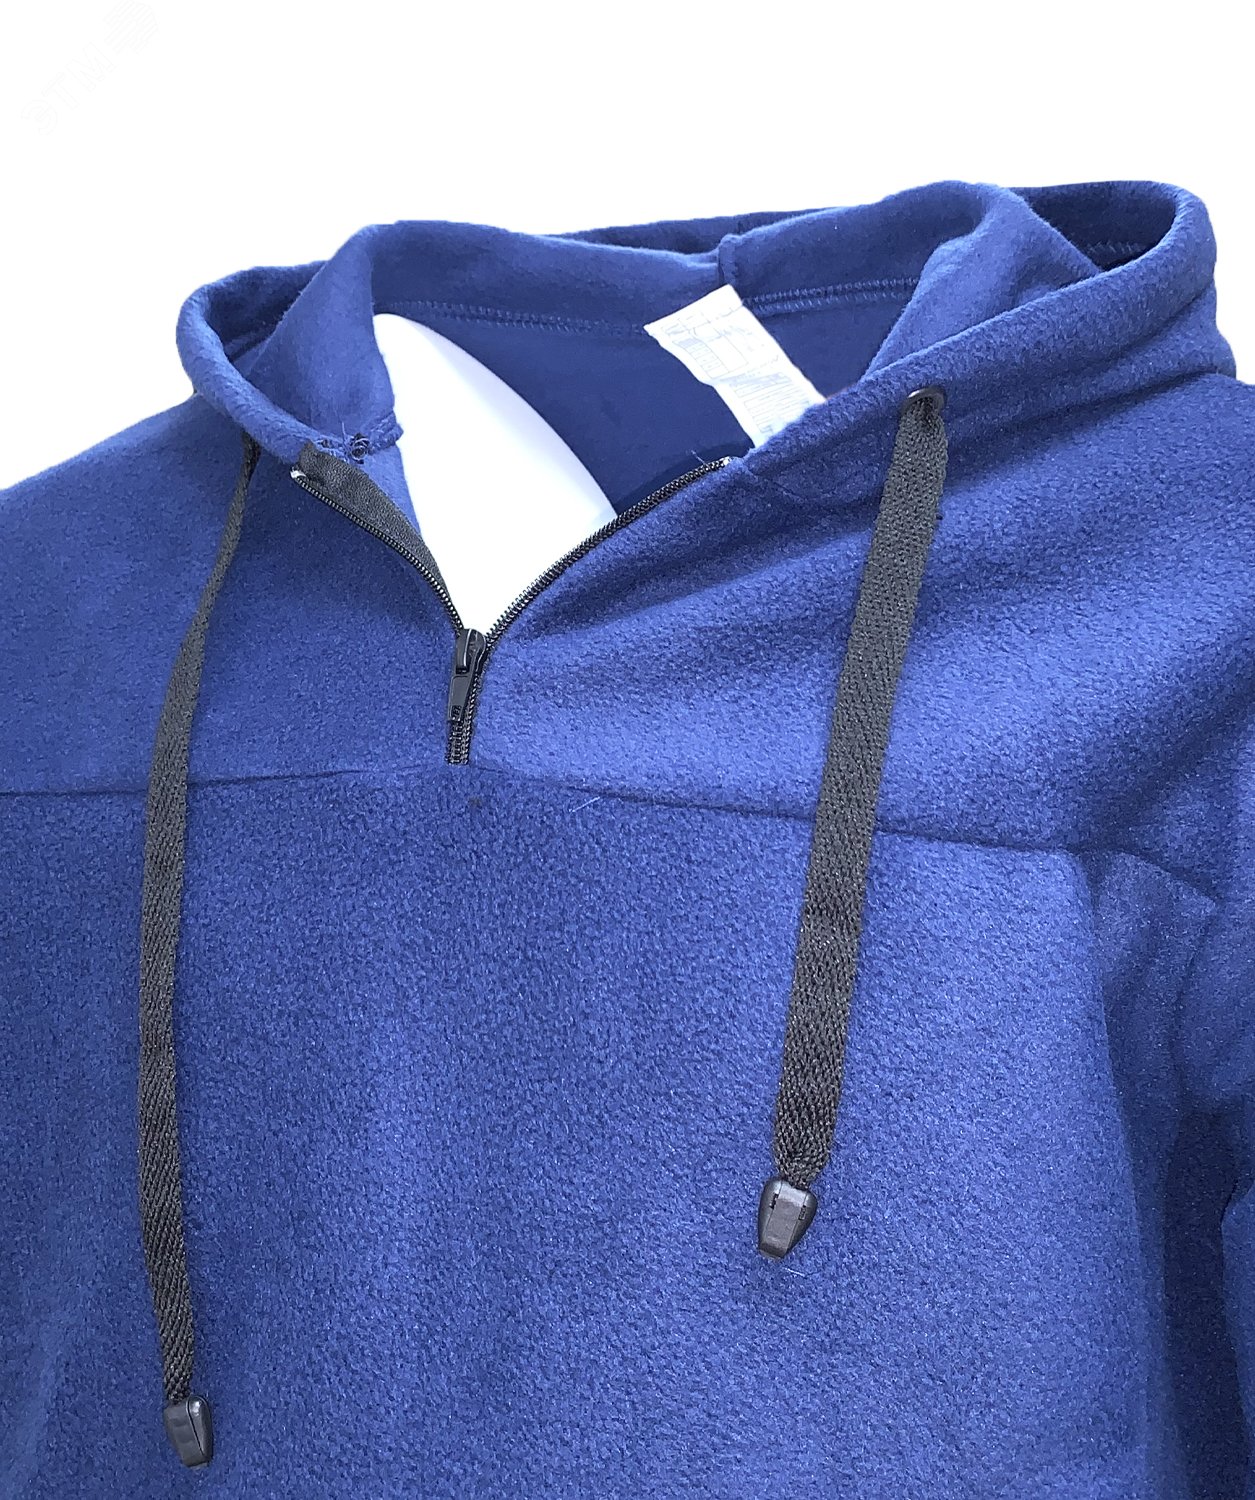 Куртка Etalon Travel TM Sprut с капюшоном, цвет темно-синий 52-54 104-108/182-188 130793 Эталон-Спецодежда - превью 3